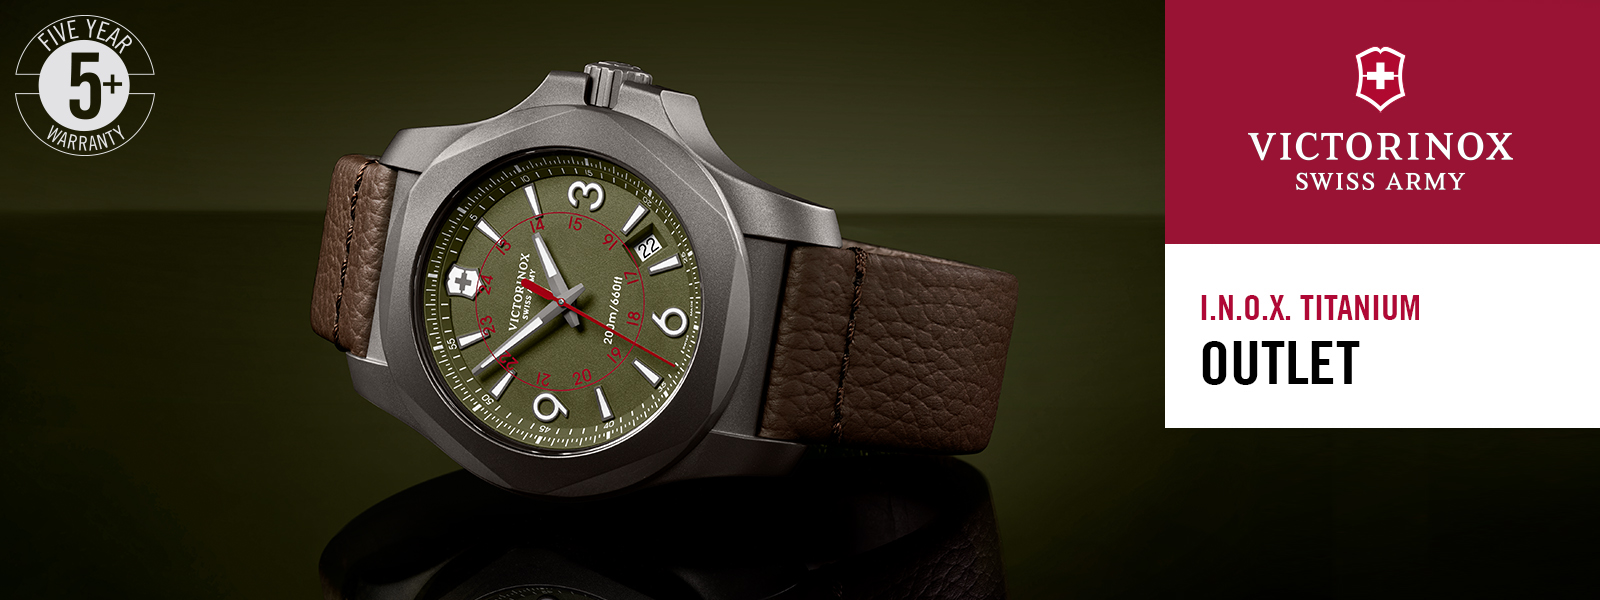 Victorinox часы -  наручные швейцарские часы Викторинокс  .